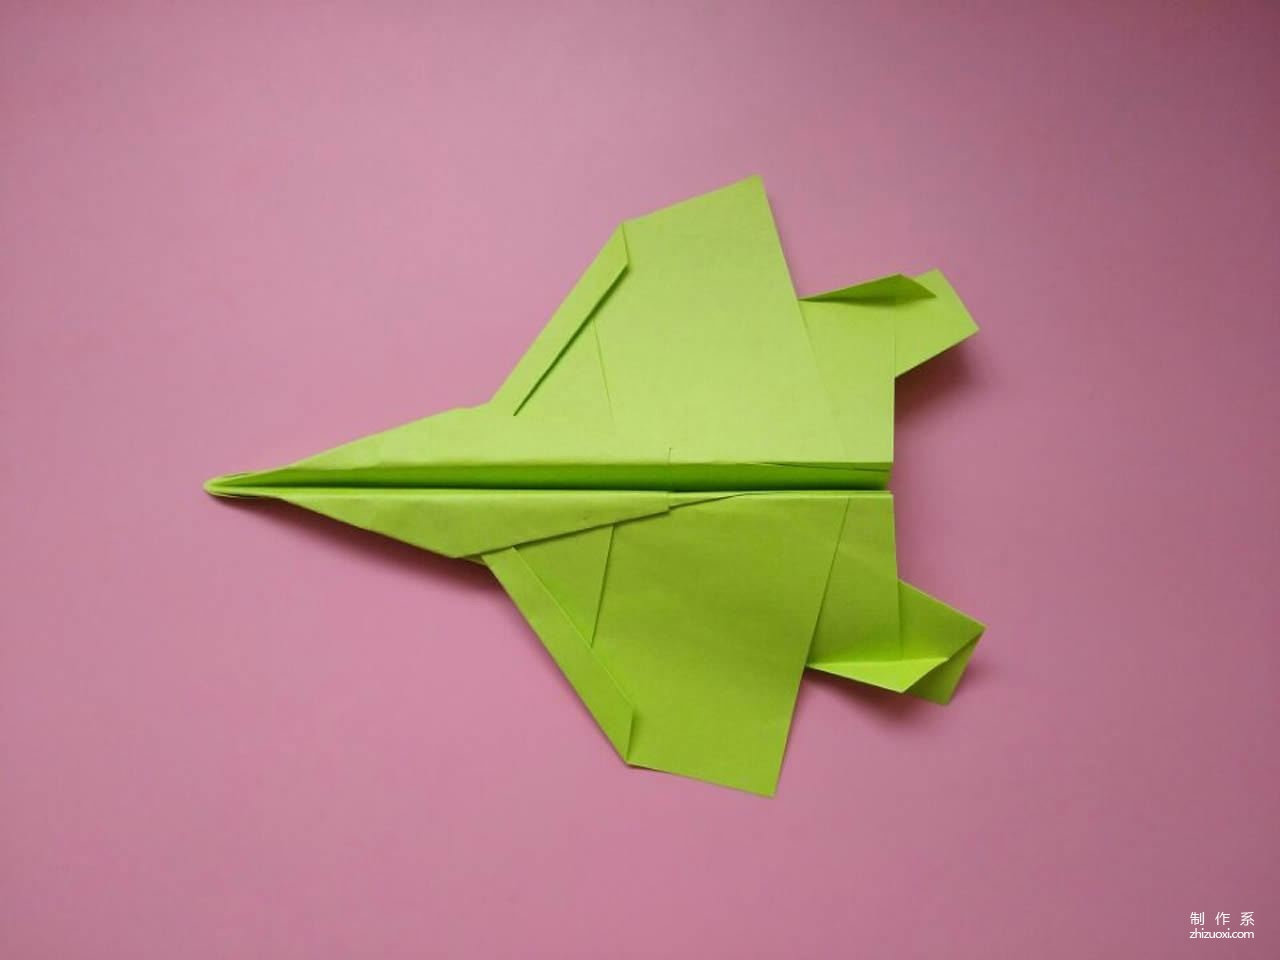 f15战斗纸飞机折纸,只要几步就做好,儿童益智手工折纸!